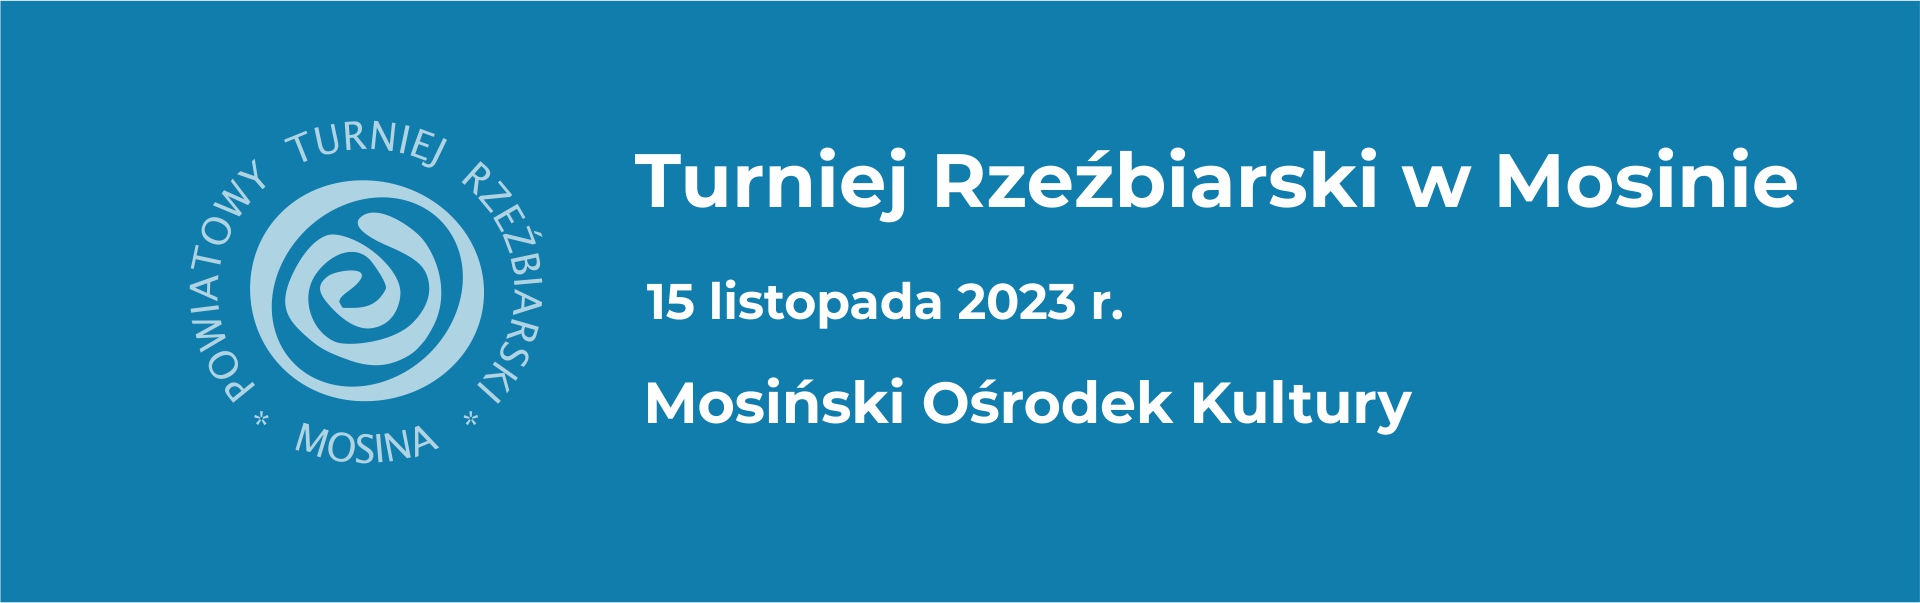 Banner Turniej rzeźbiarski 202